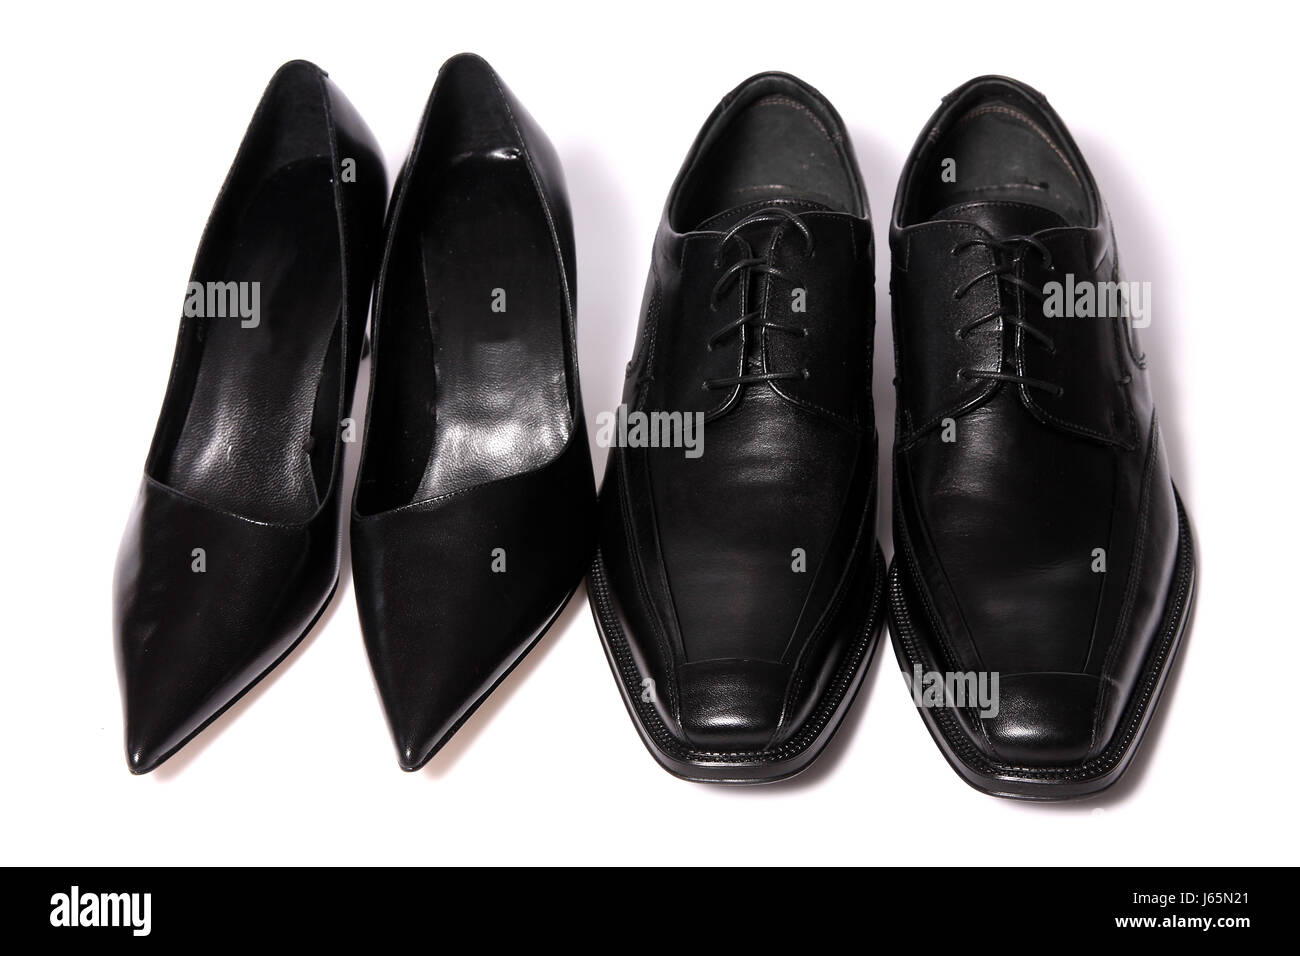 highheels shoelace pumps heels black swarthy jetblack deep black shoes leather Stock Photo